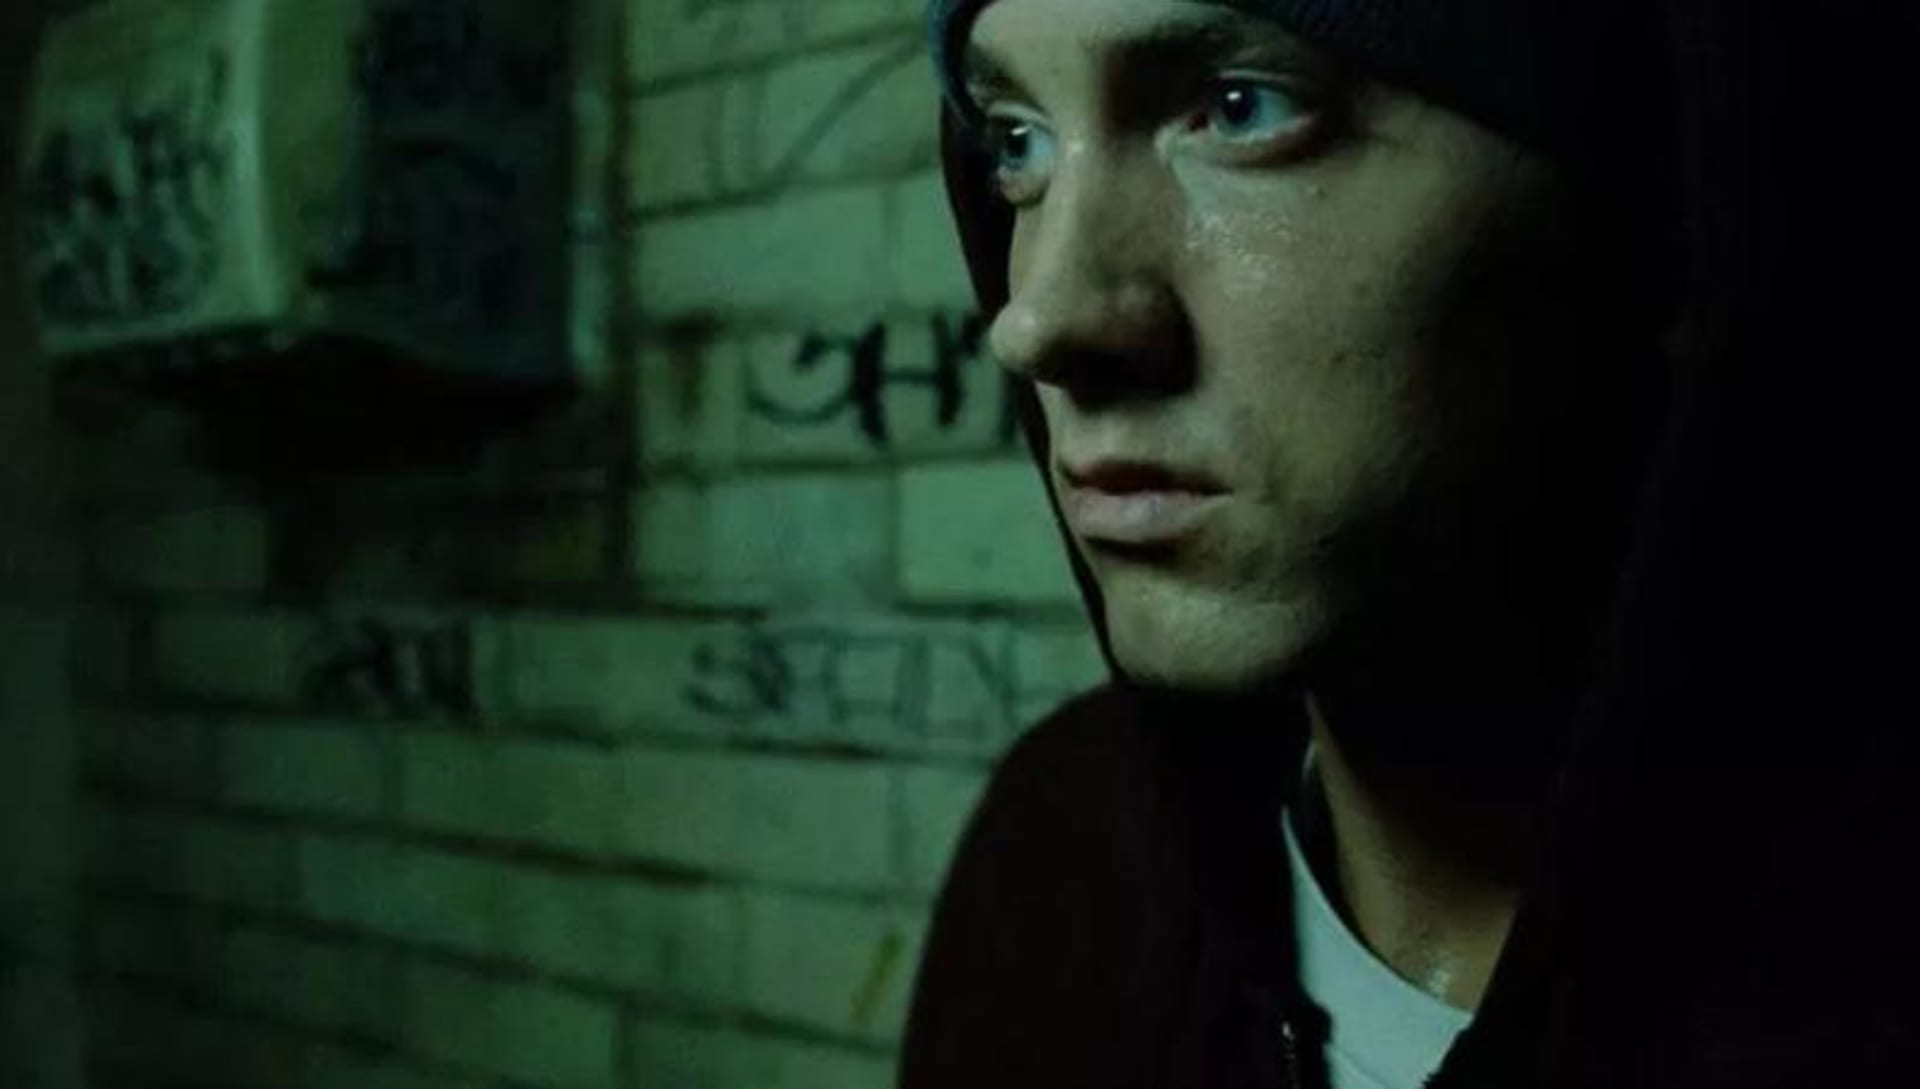 Skladba od Eminema se líbí převážně psychopatům, zjistili vědci 1